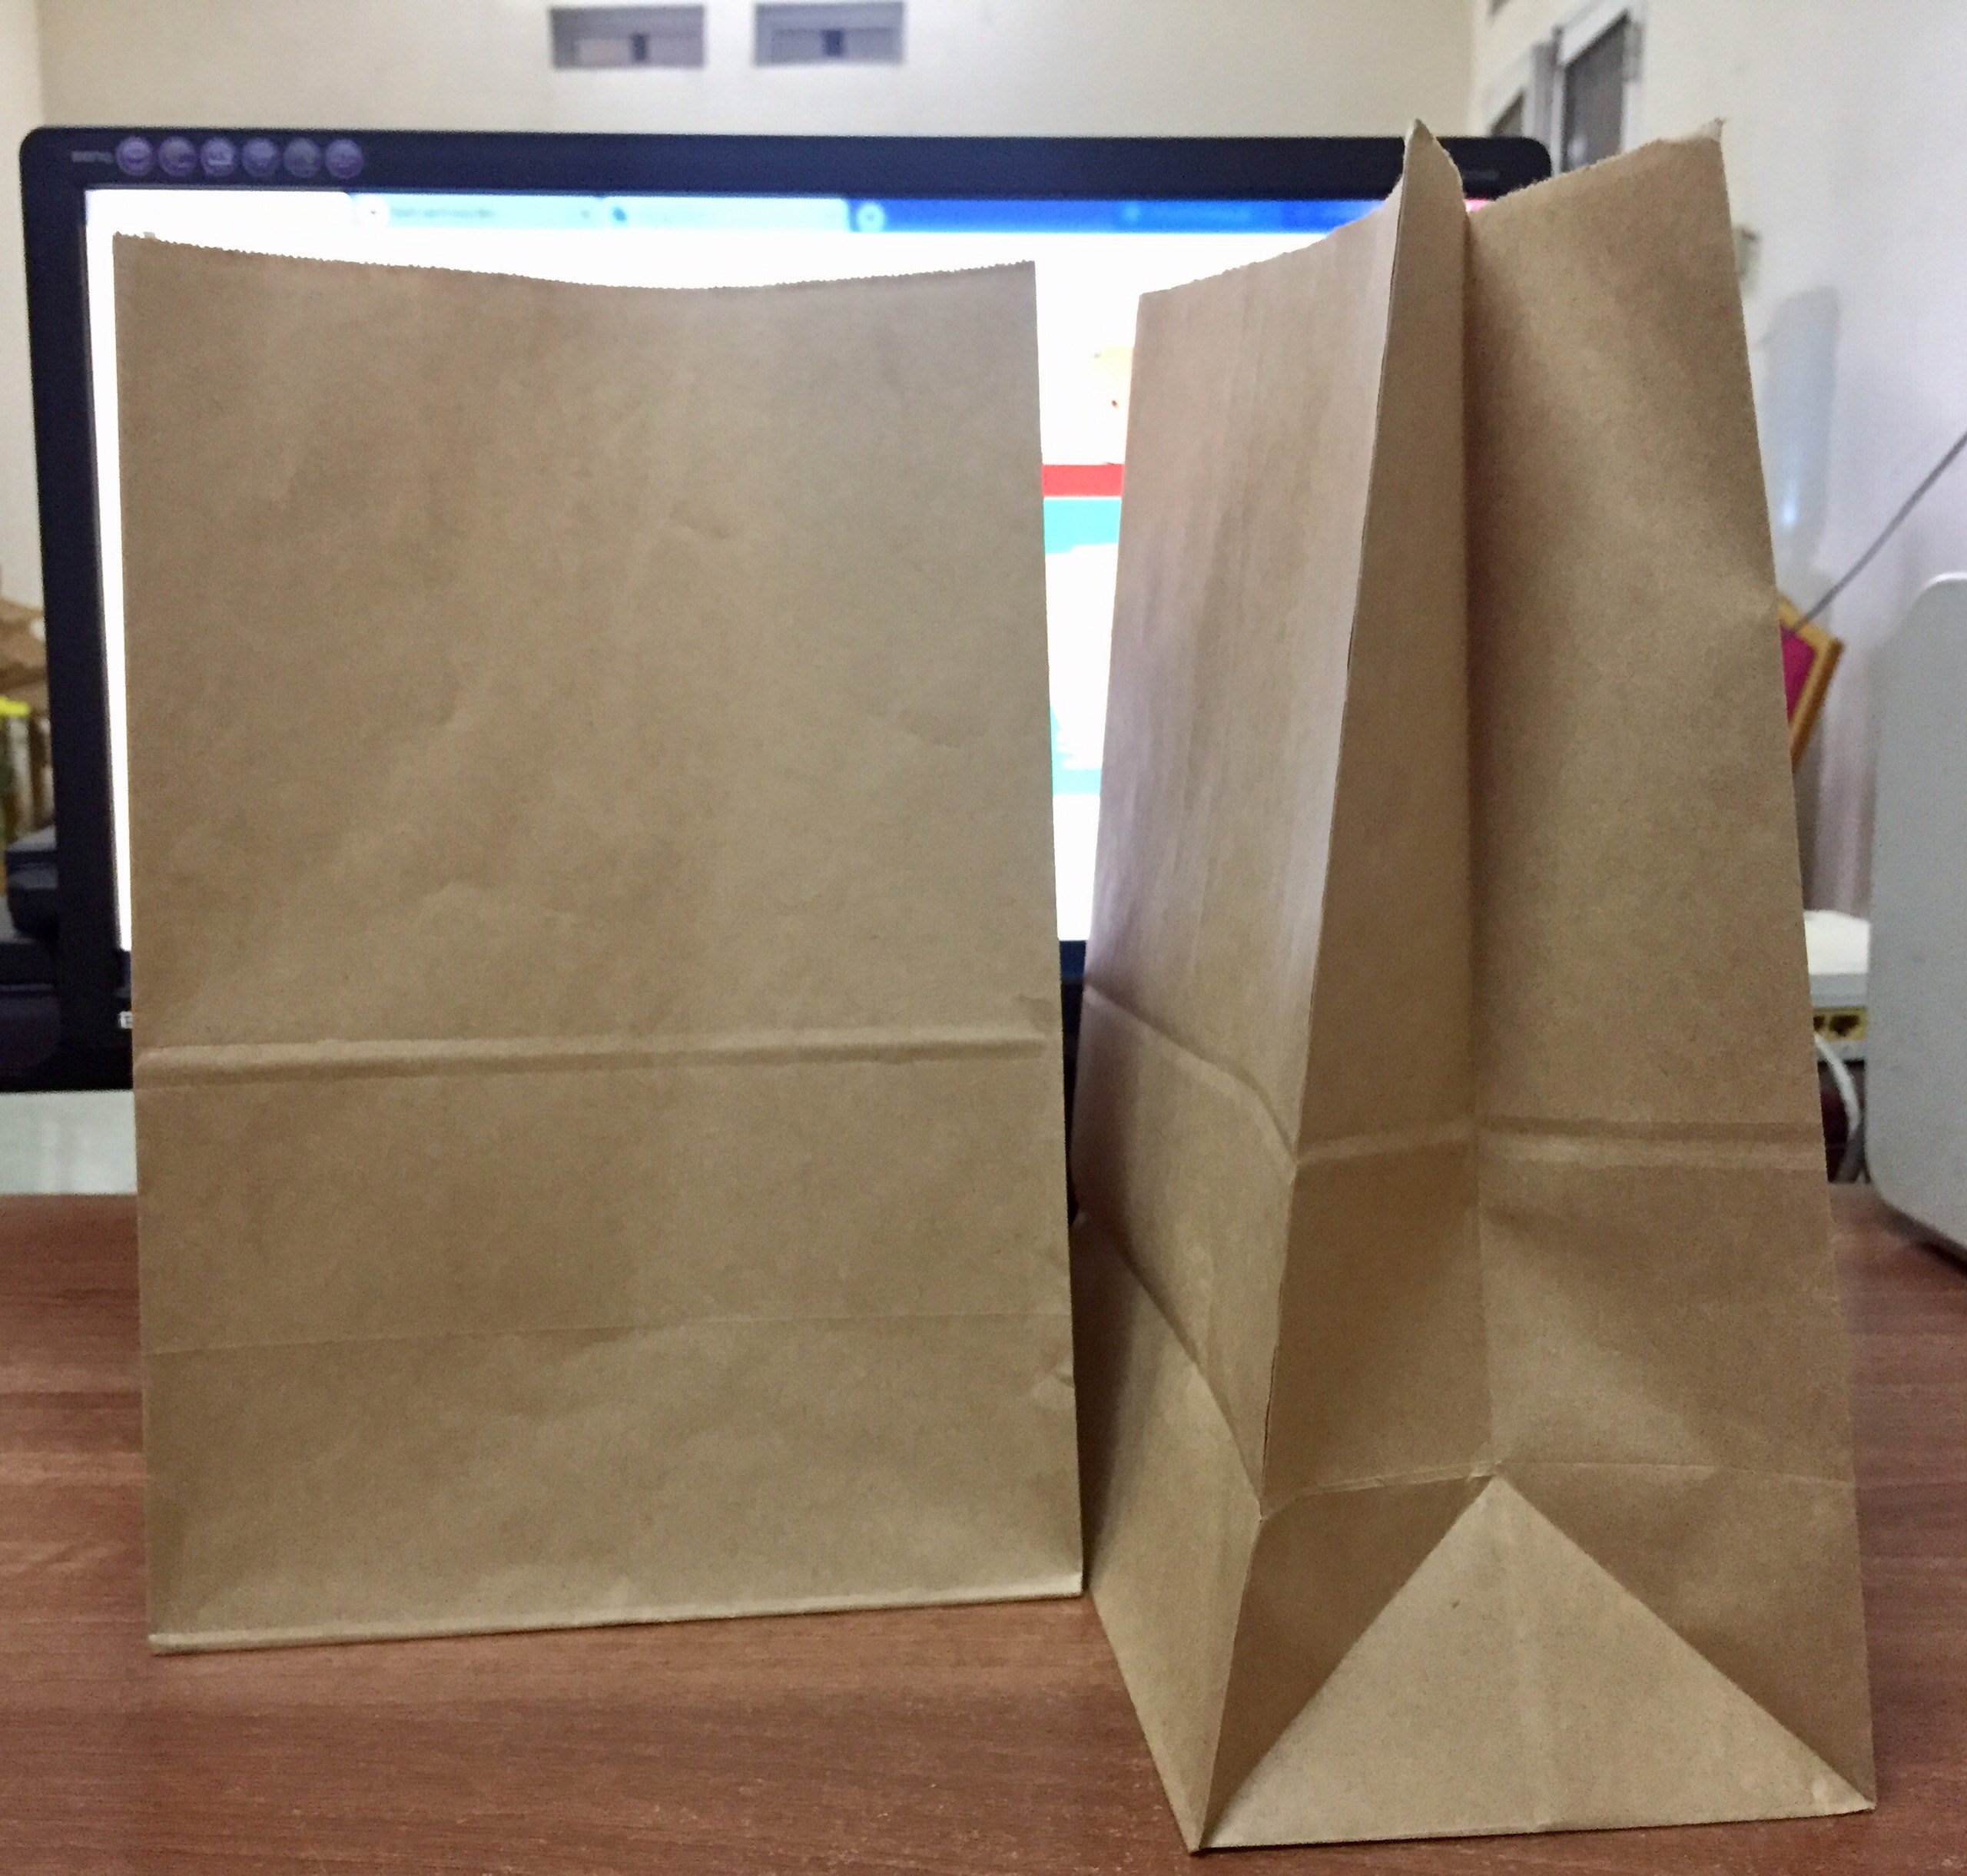 Kraft paper bag